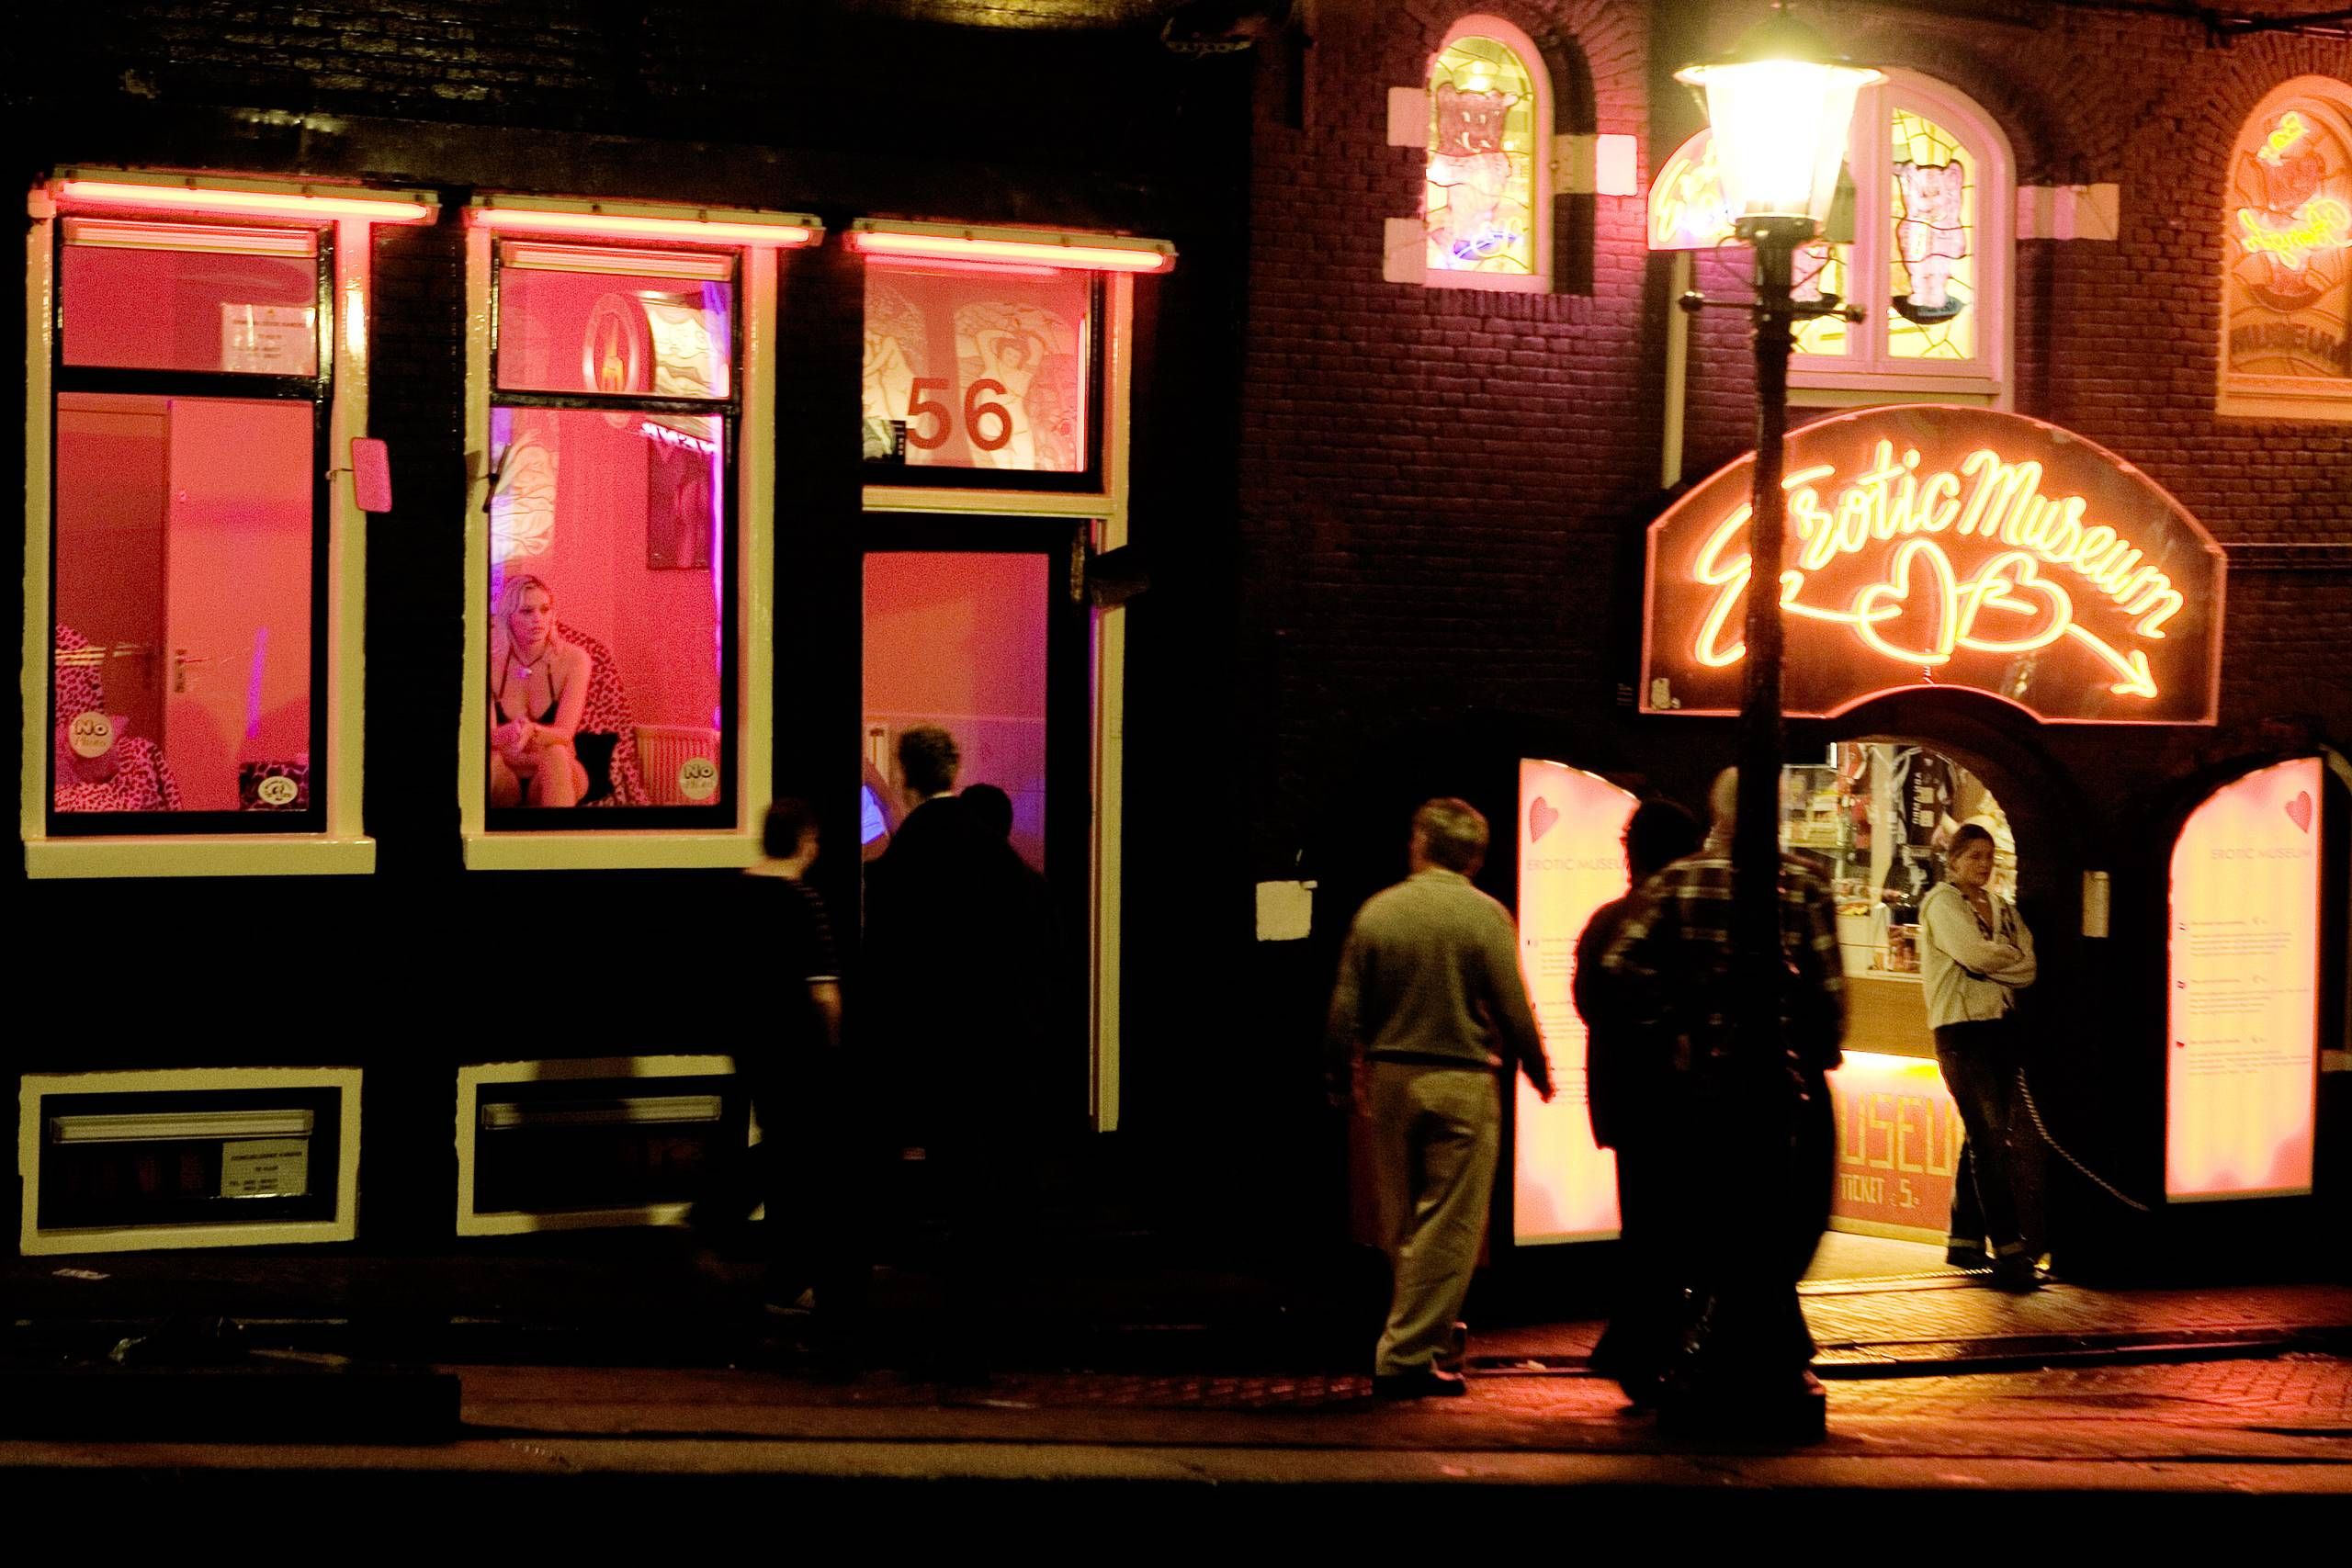 Meyella Vær sød at lade være Definition Forslag om at fjerne prostituerede fra vinduerne i Amsterdam